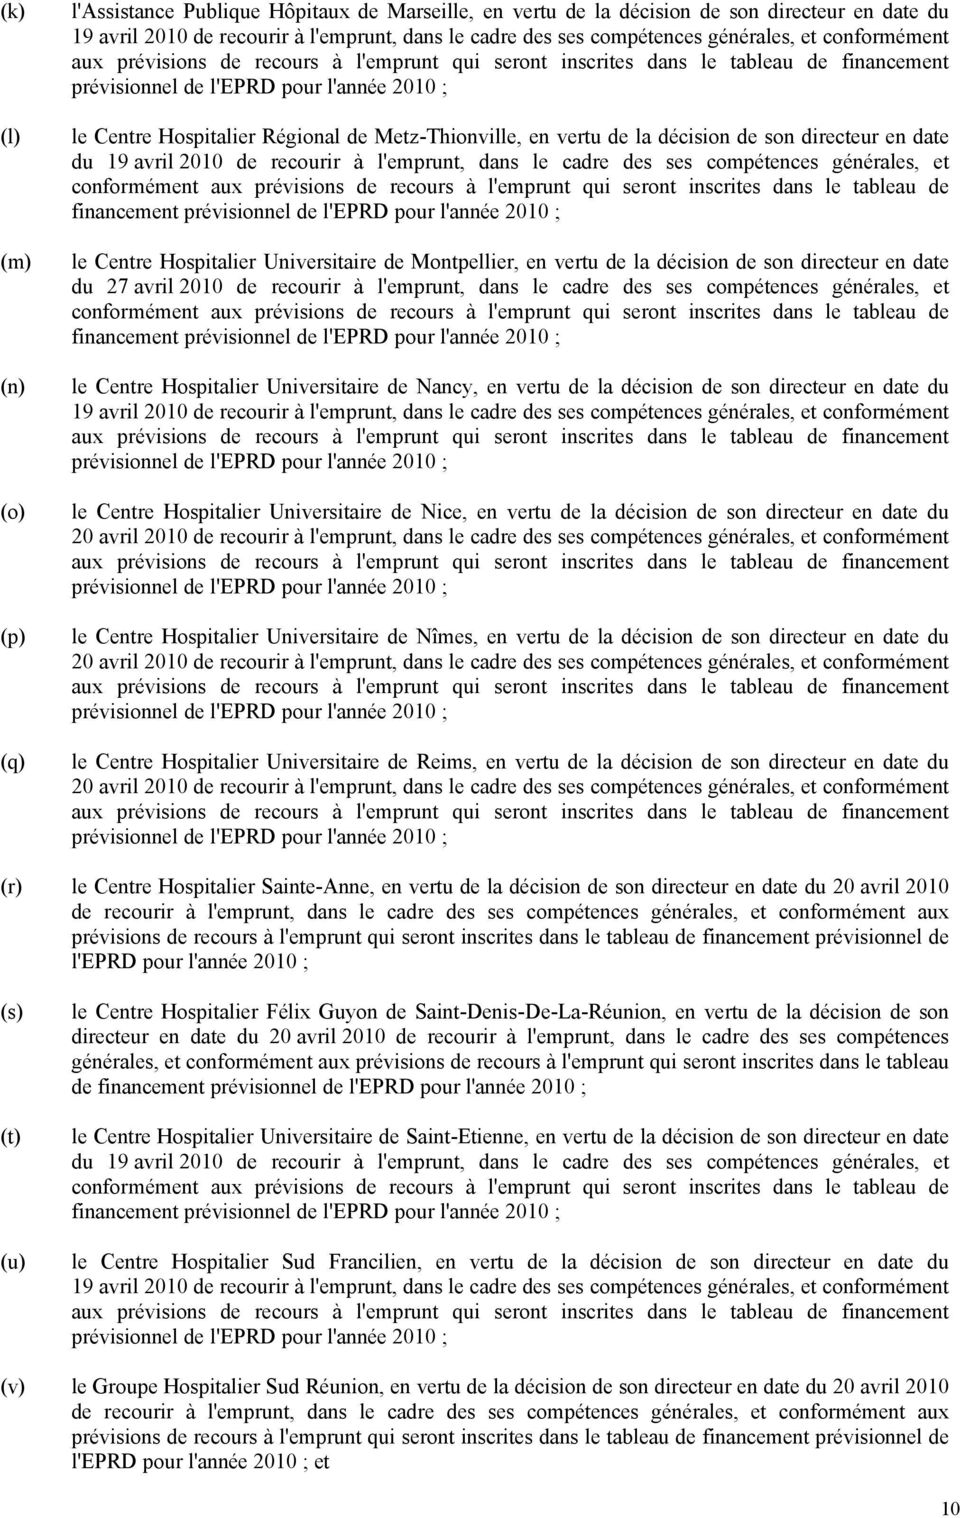 Metz-Thionville, en vertu de la décision de son directeur en date du 19 avril 2010 de recourir à l'emprunt, dans le cadre des ses compétences générales, et conformément aux prévisions de recours à